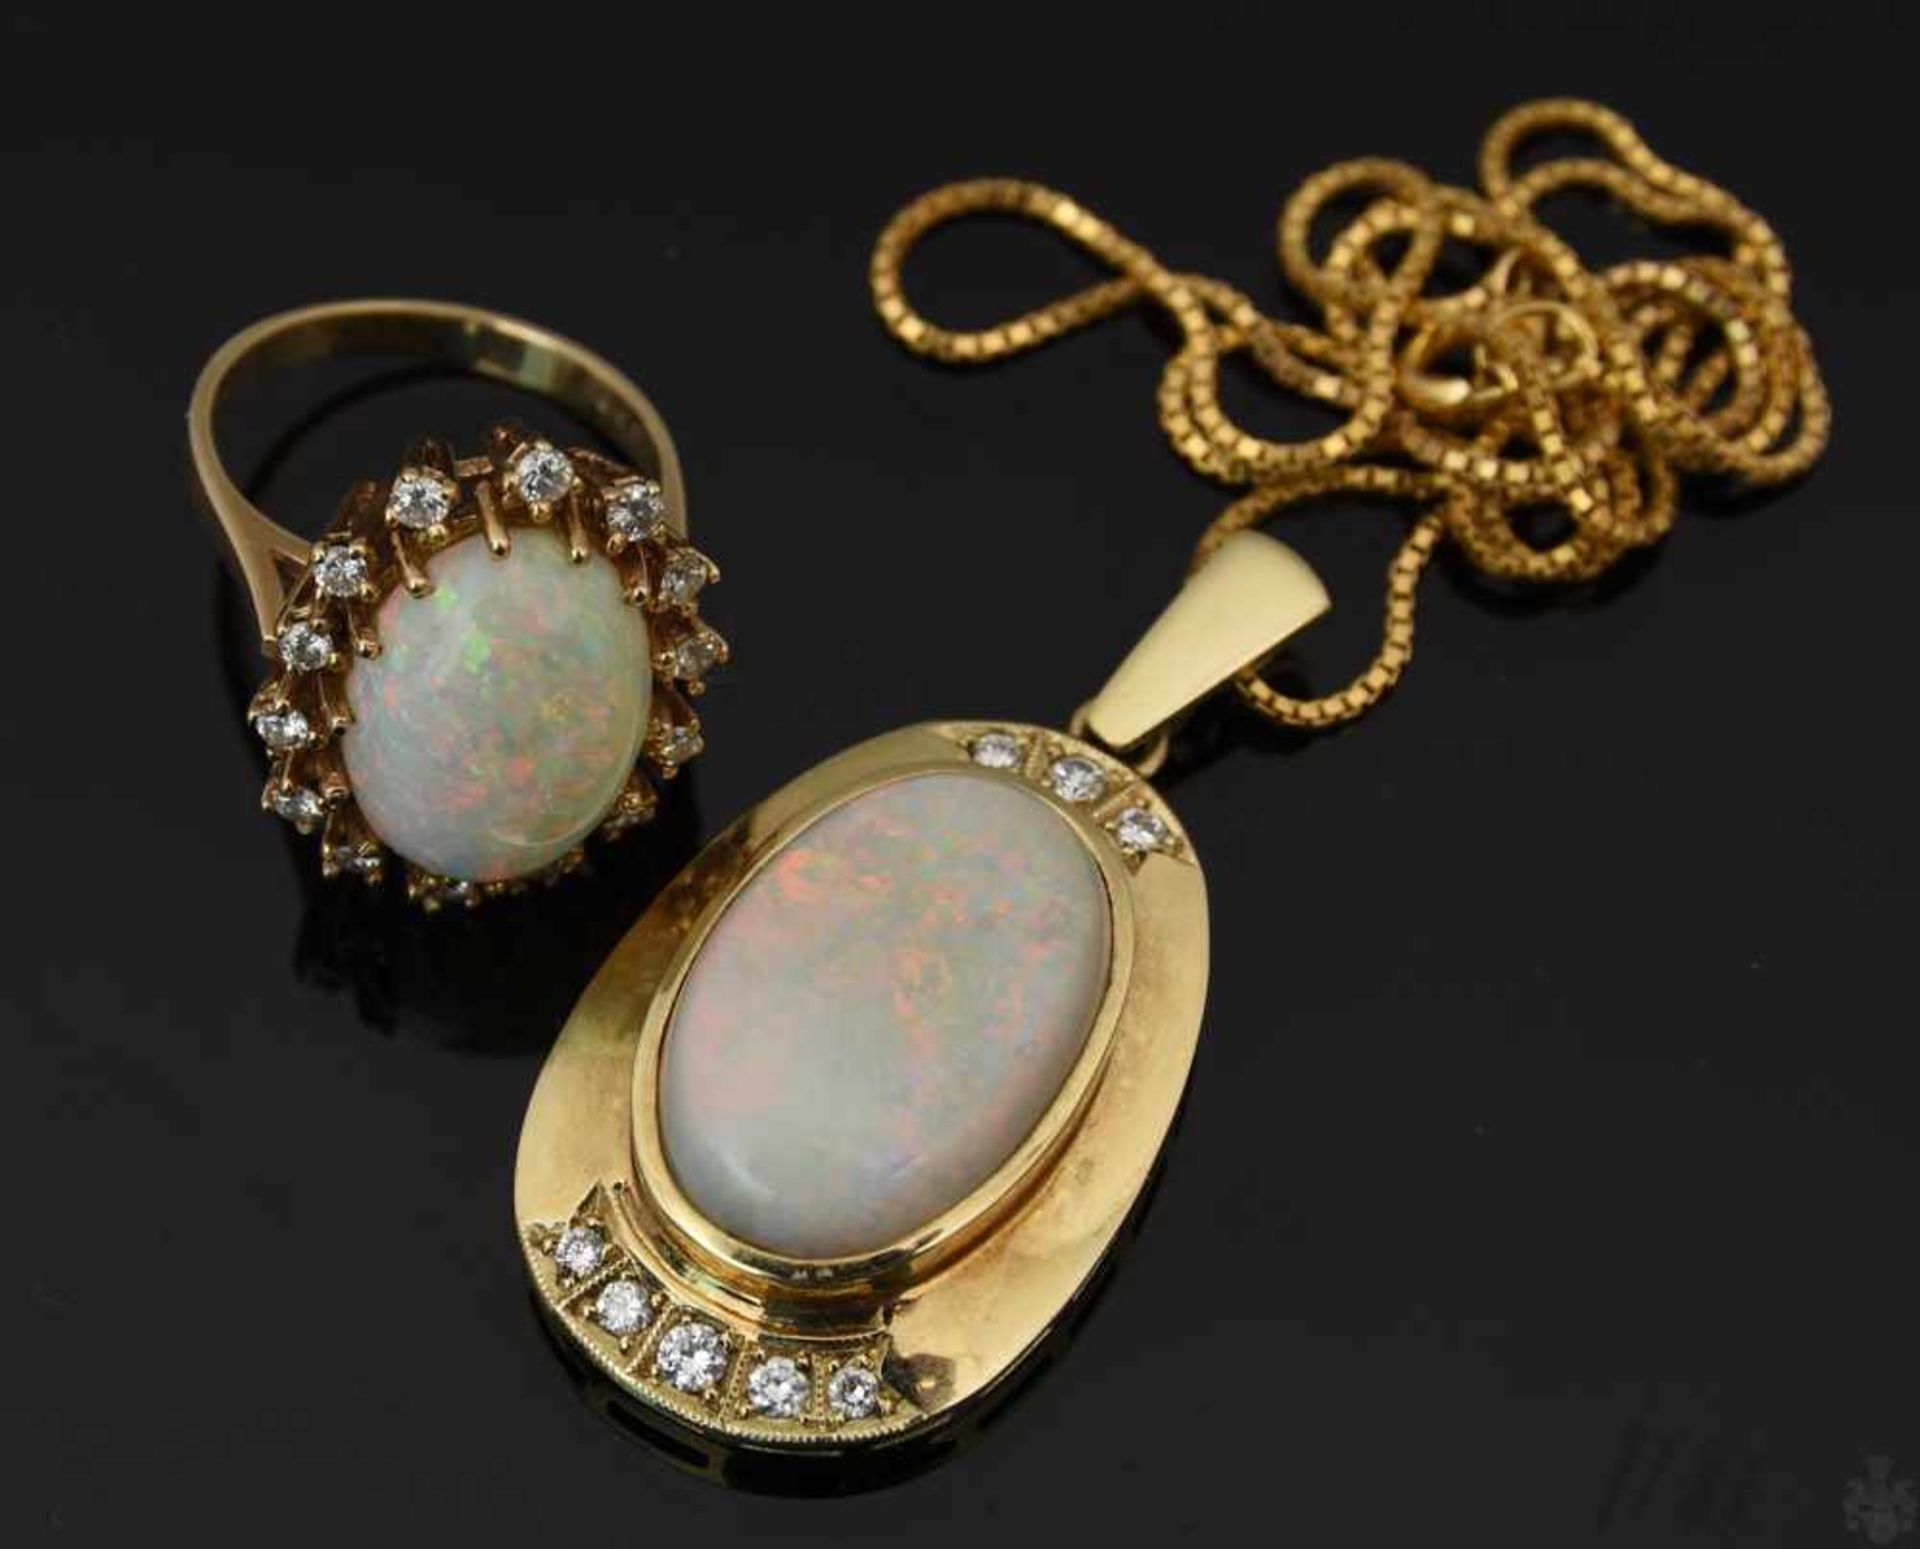 HALSKETTE MIT ANHÄNGER UND RING , mit Opalen und Brillianten.Oval geschliffene Opale mit umlaufenden - Image 9 of 9